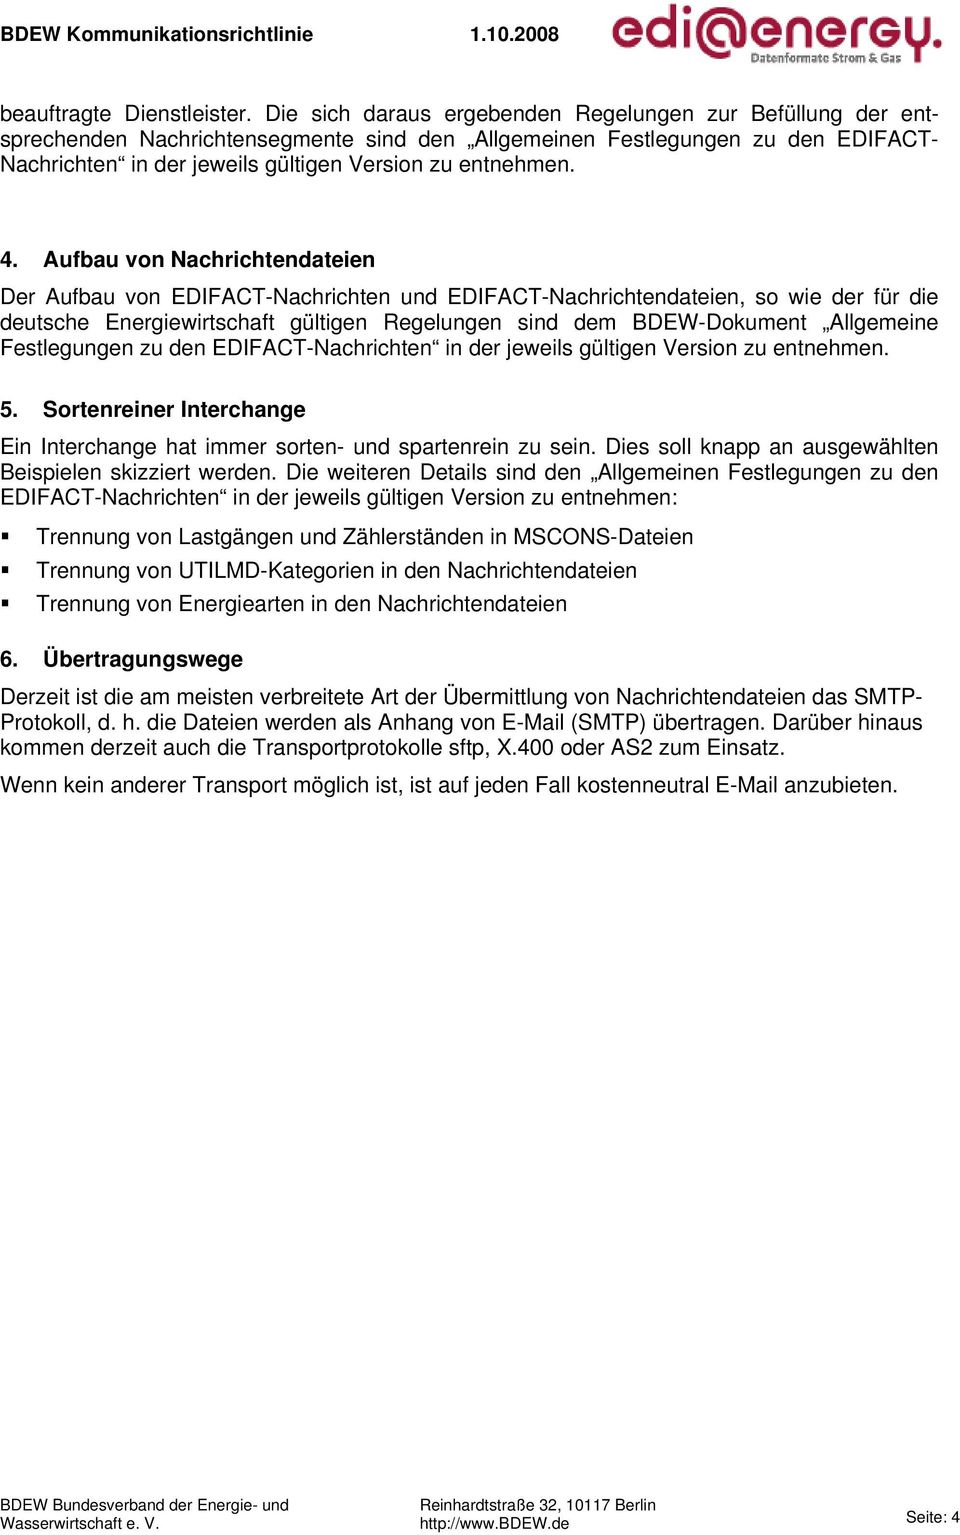 4. Aufbau von Nachrichtendateien Der Aufbau von EDIFACT-Nachrichten und EDIFACT-Nachrichtendateien, so wie der für die deutsche Energiewirtschaft gültigen Regelungen sind dem BDEW-Dokument Allgemeine